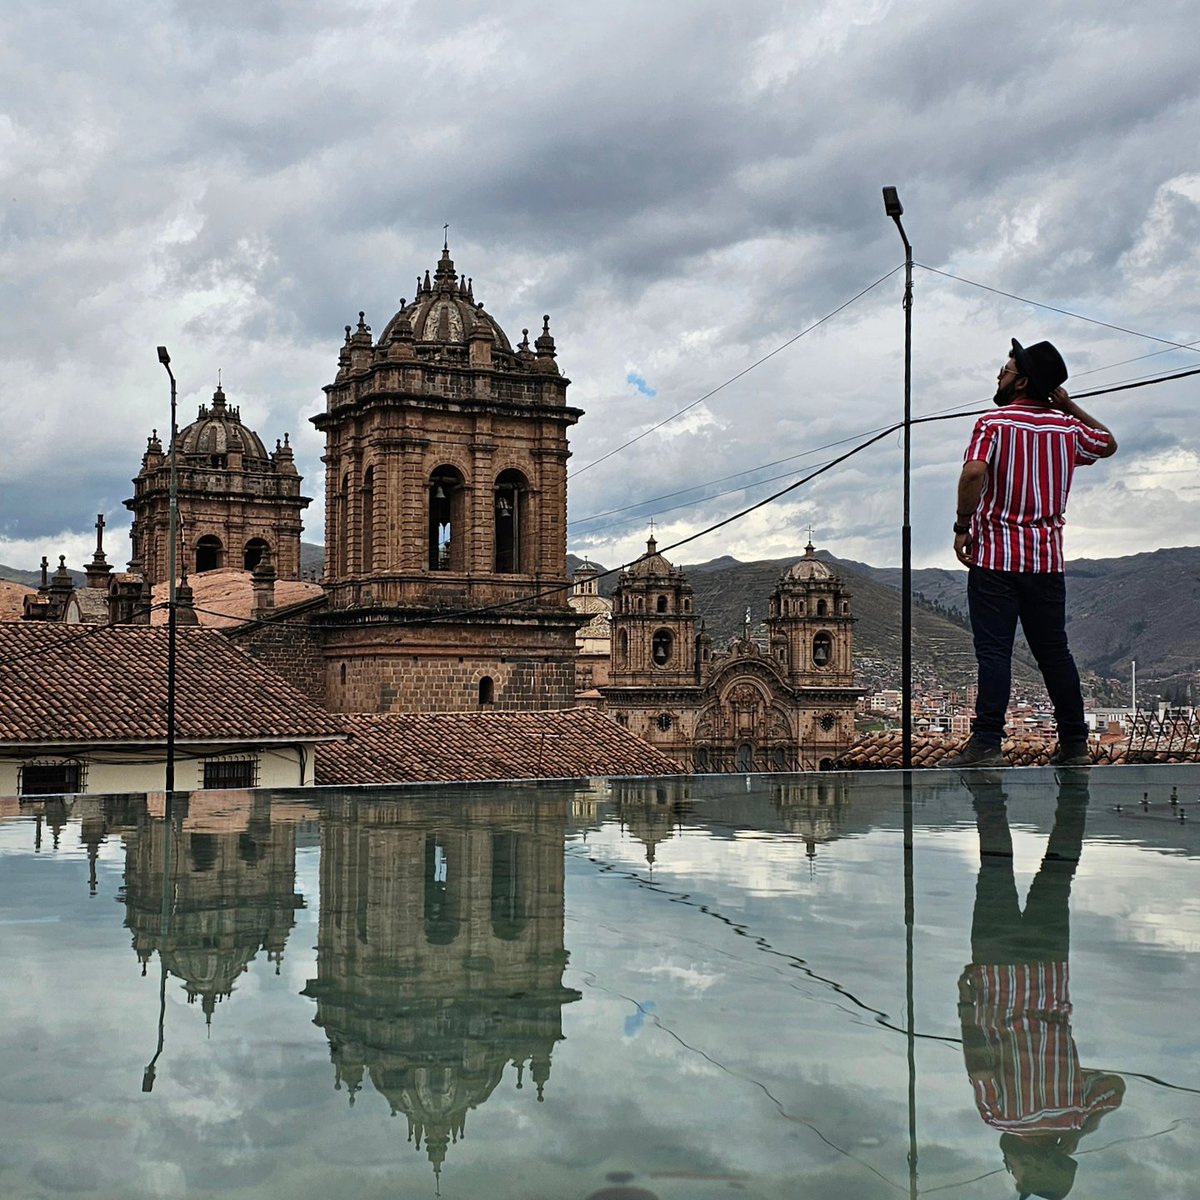 Cusco: la capital cultural del Perú, un lugar con su propia magia; lleno de colores, sabores y texturas. Amé caminar por sus calles y conocer algunos de sus rincones.

#Aare #Aareplays #Peru #Cusco #travel #viajero #amigos #amor #turista #amoviajar